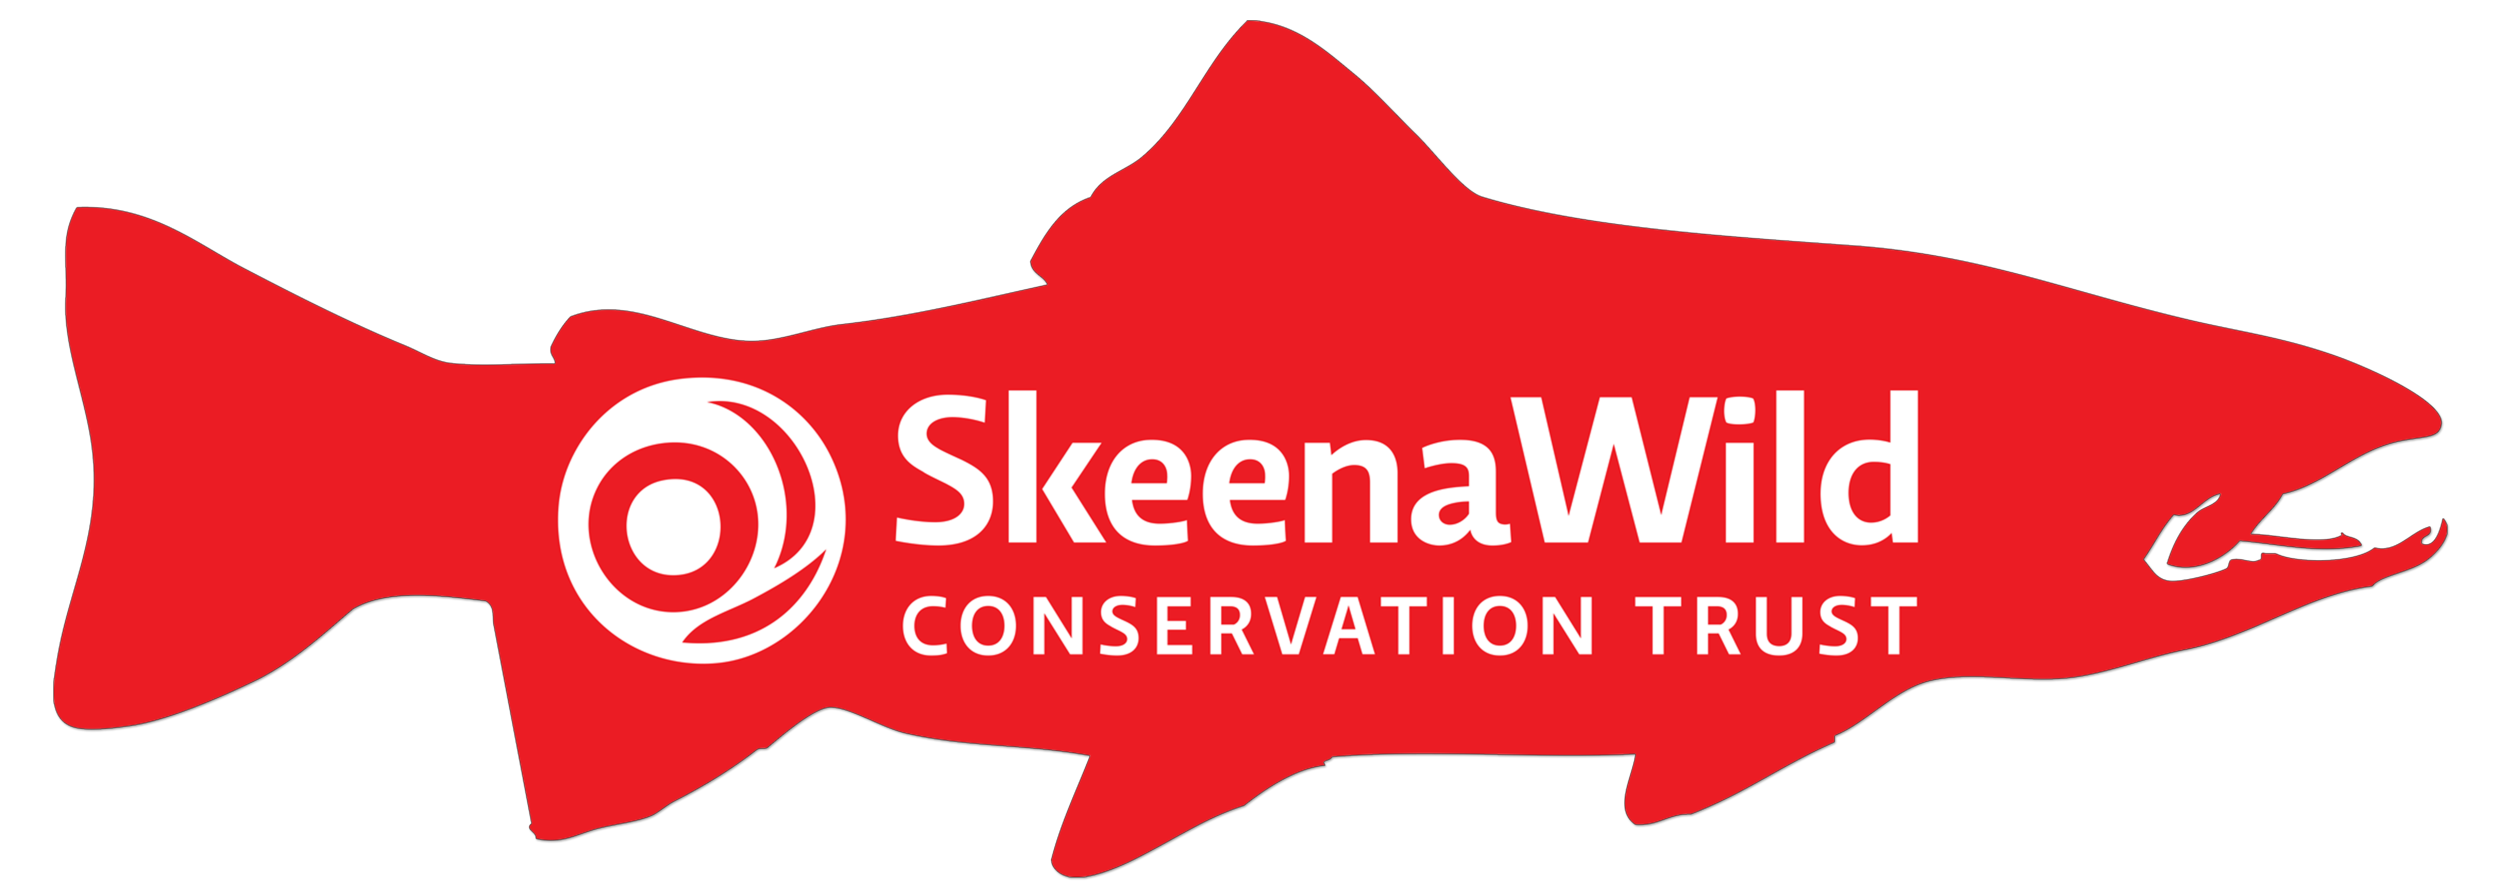 skeenawild-transparant-logo.png